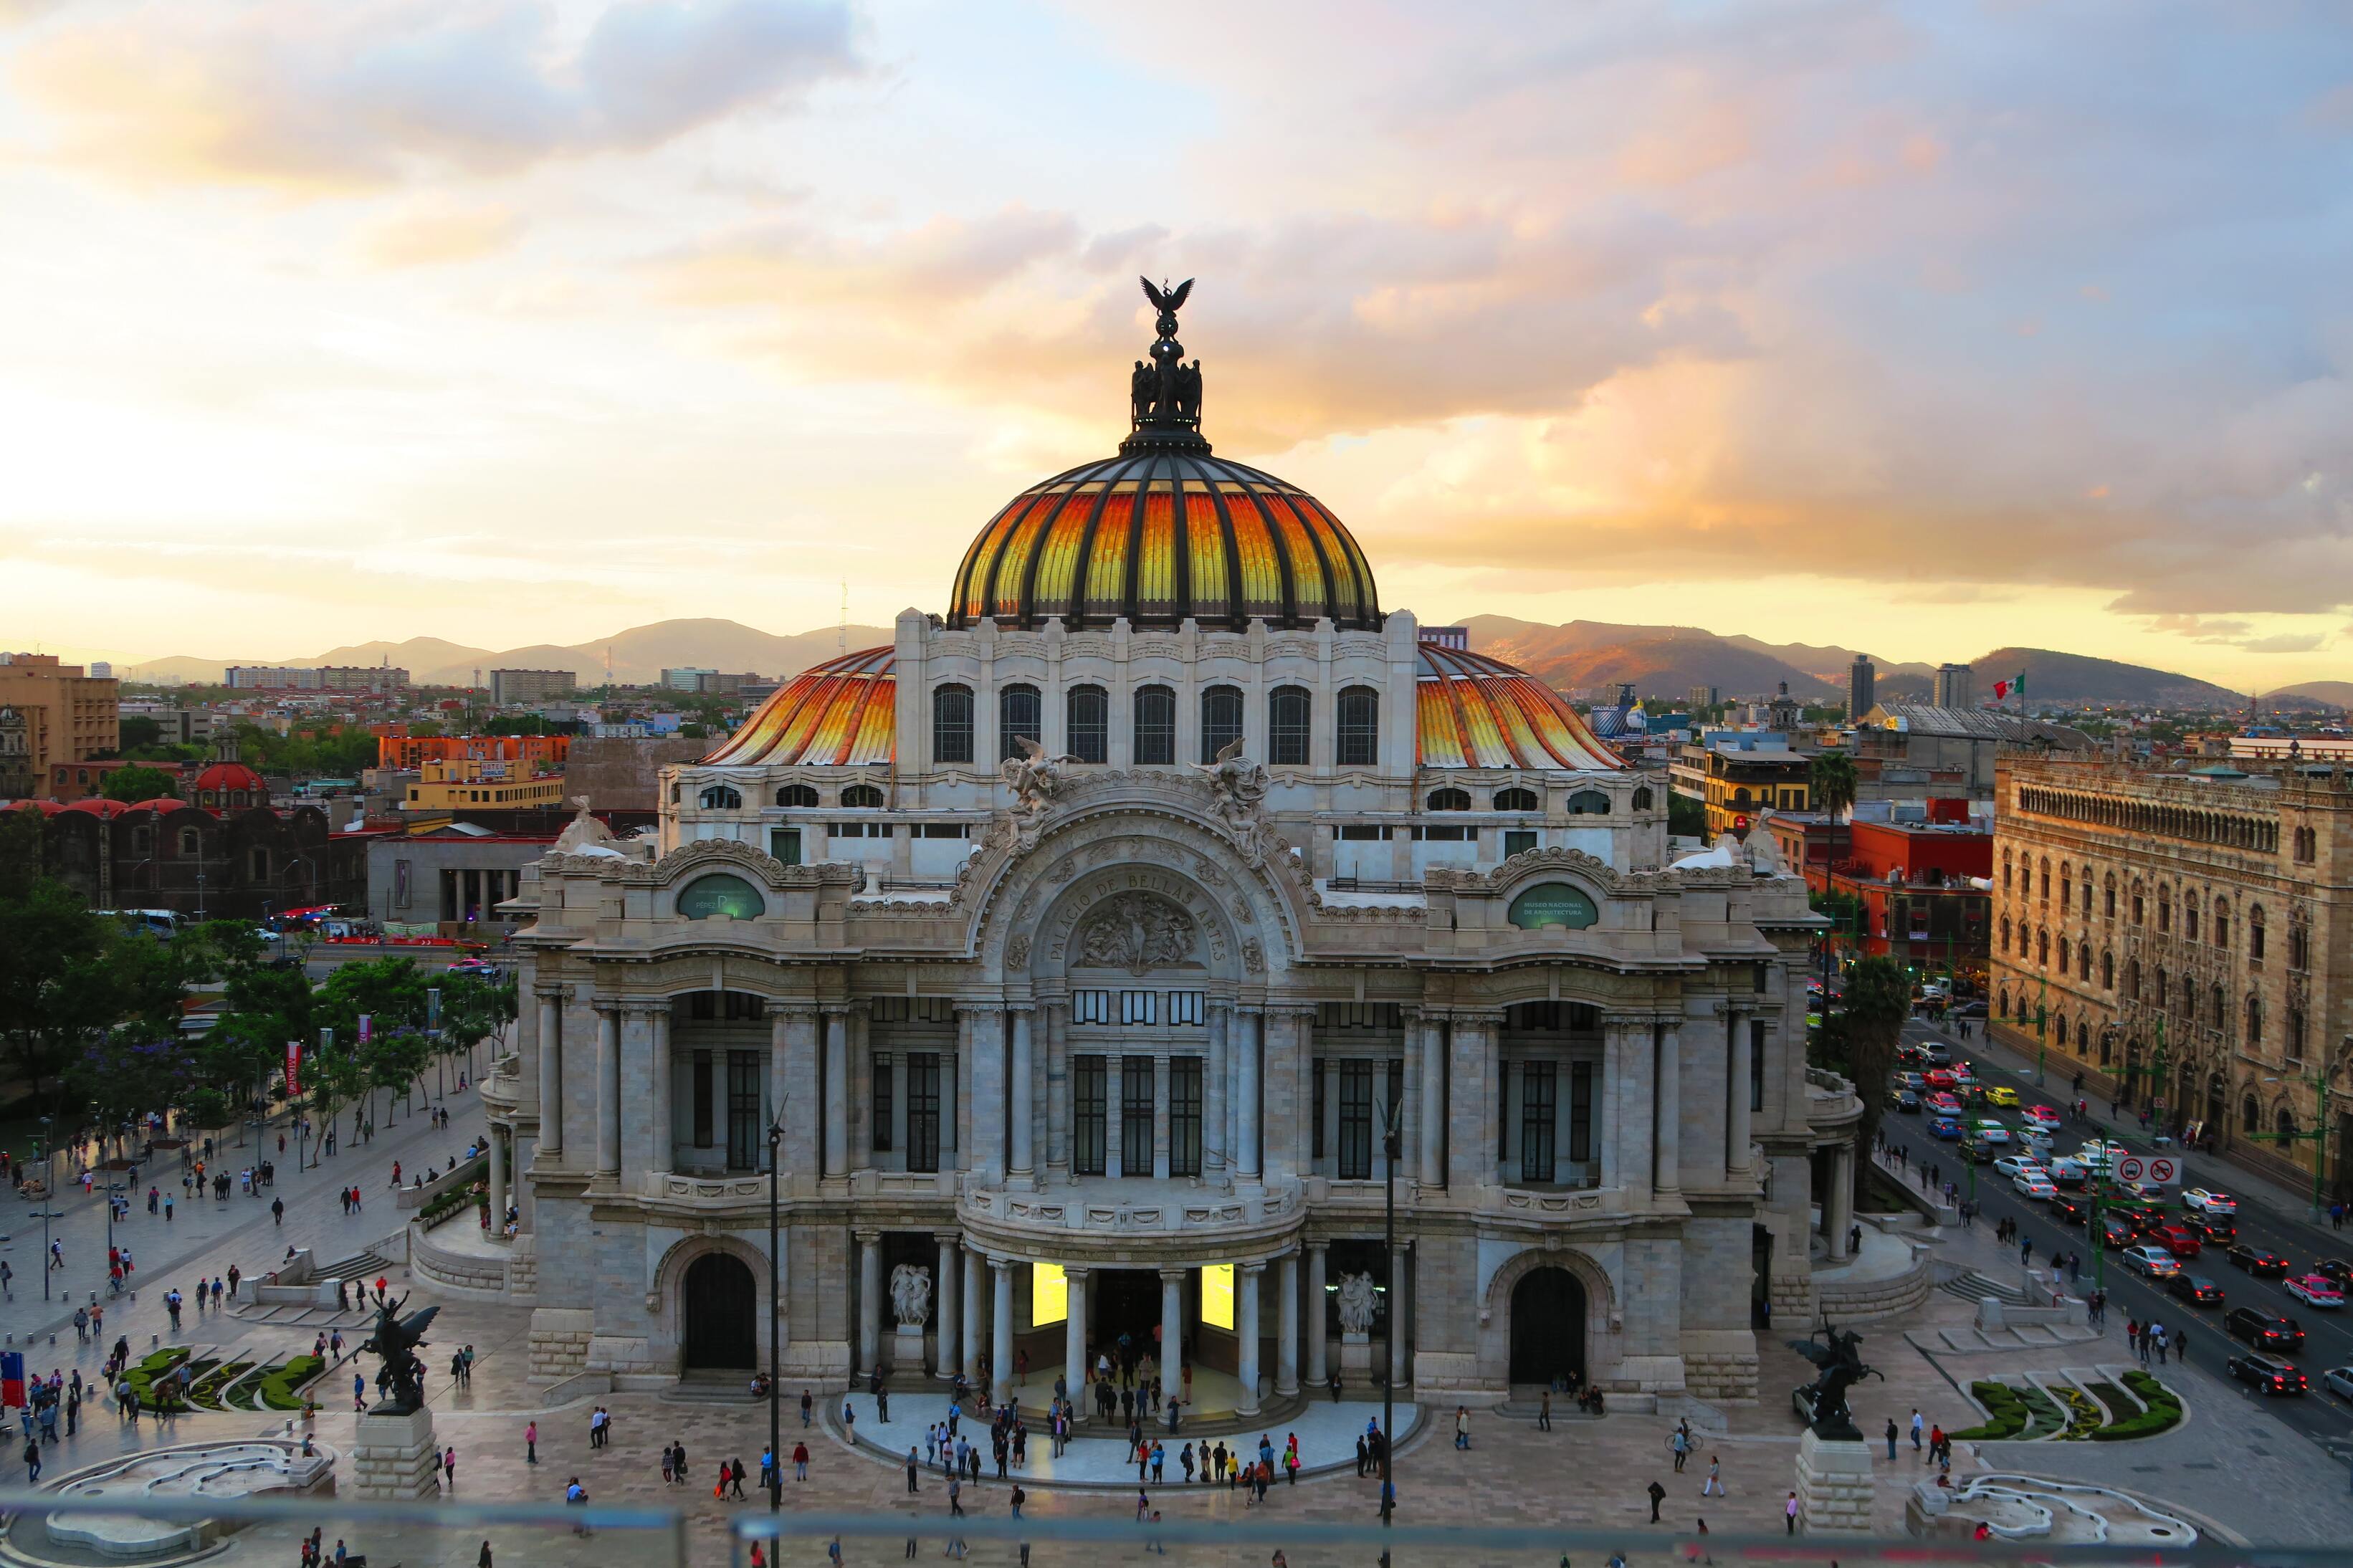 Palacio Bellas Artes in Mexico City. Photo by David Carballar from Unsplash.